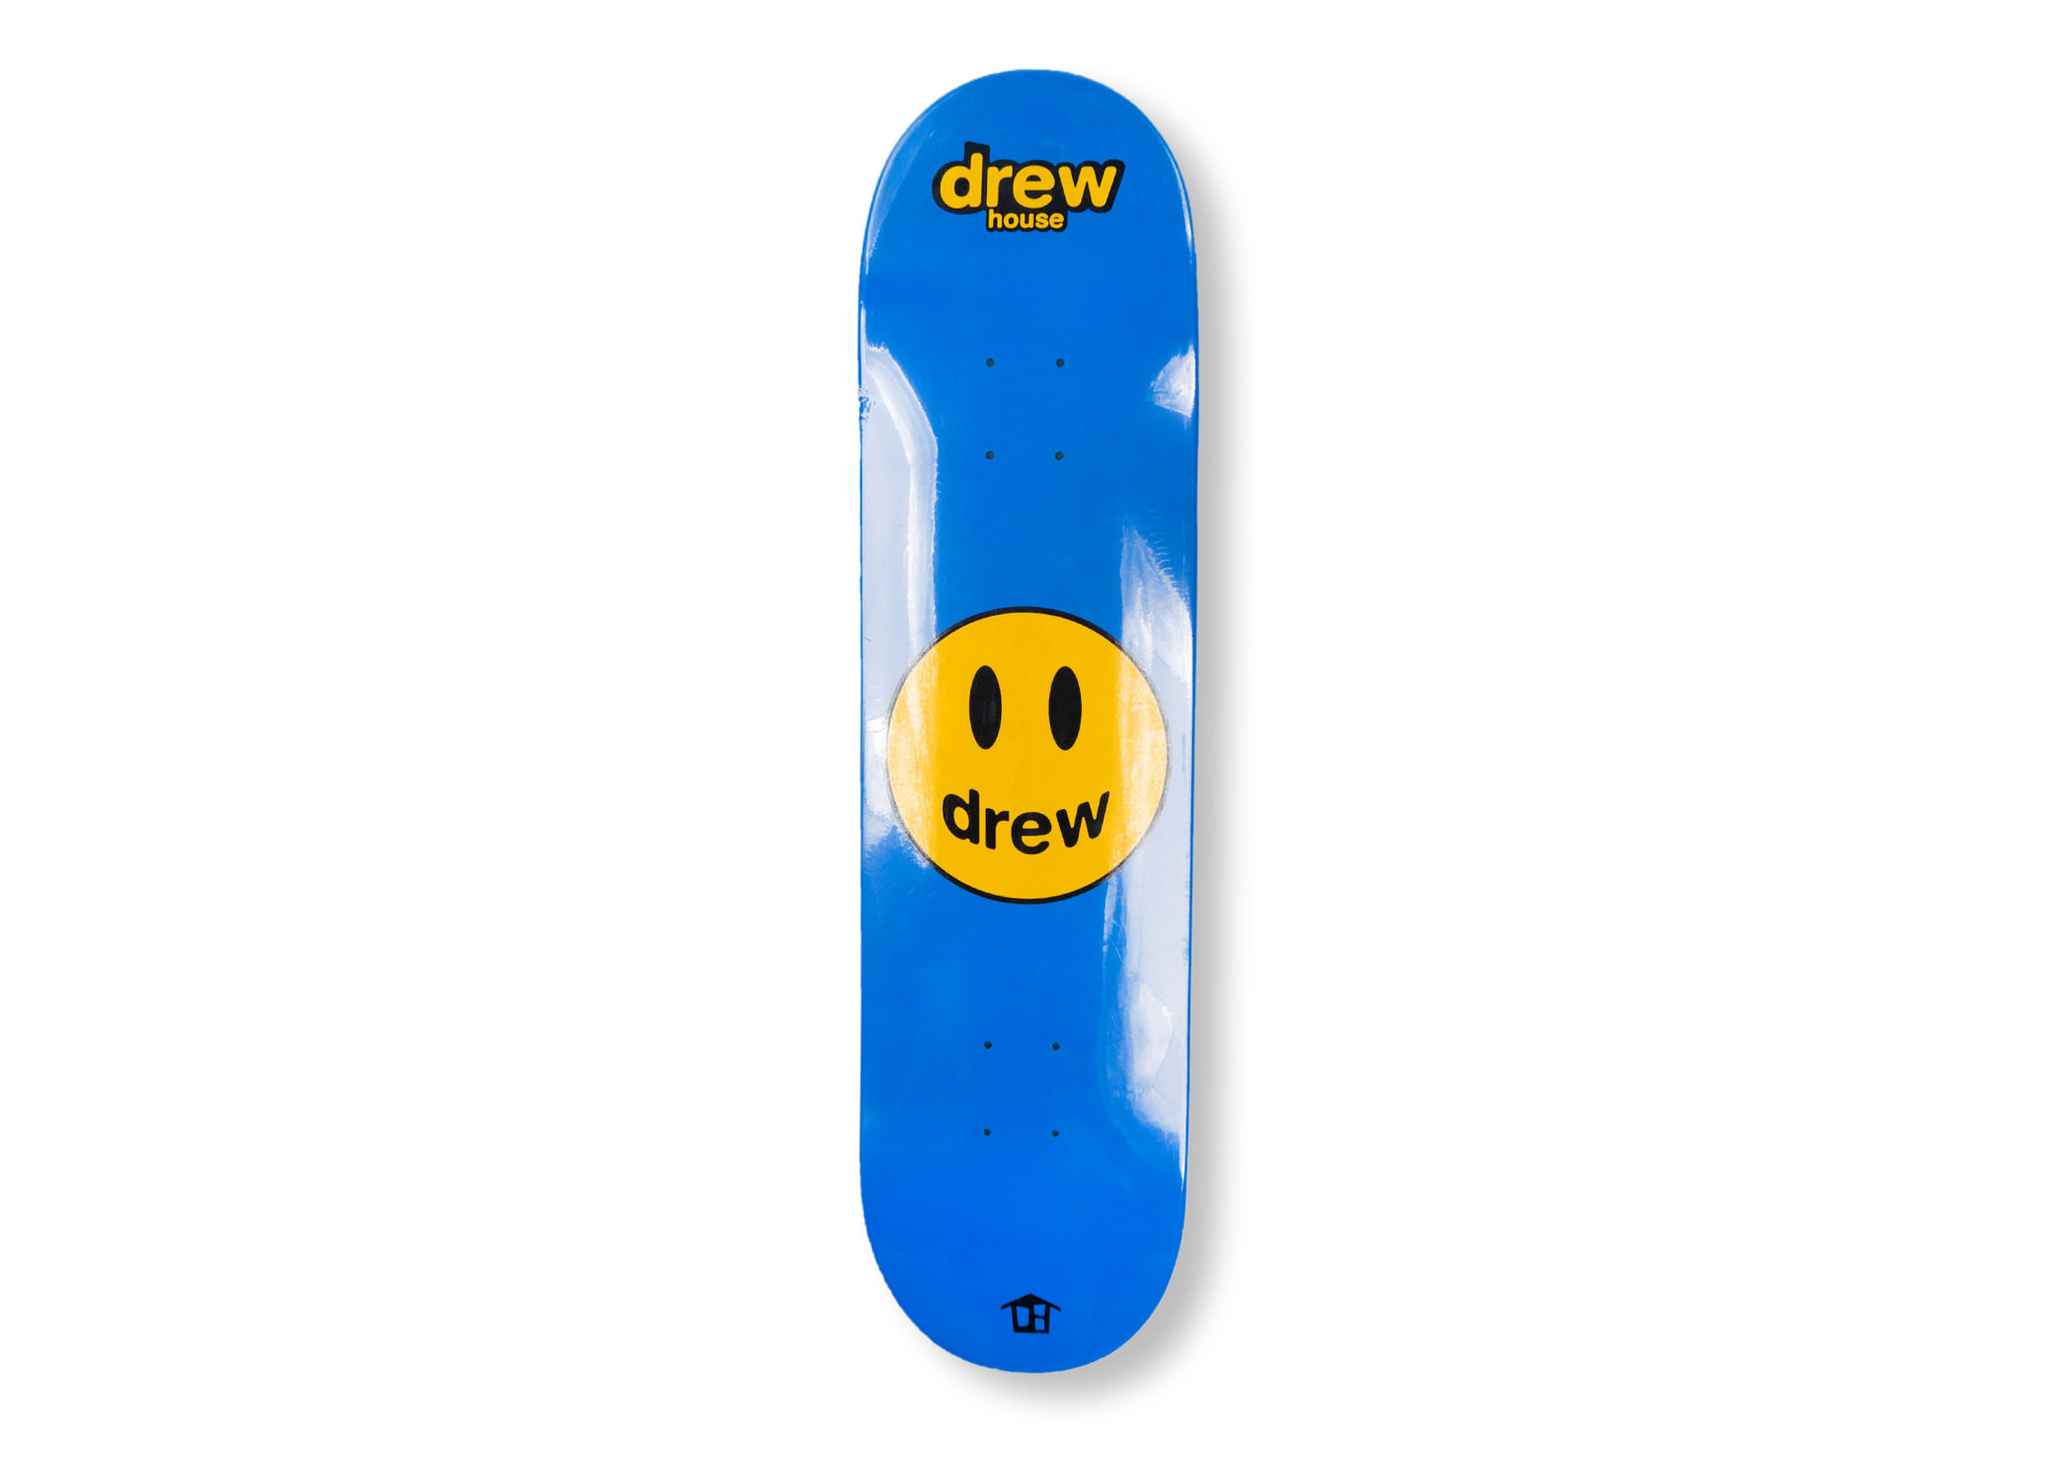 発売開始drew house yellow mascot deck スケートボード パーカー